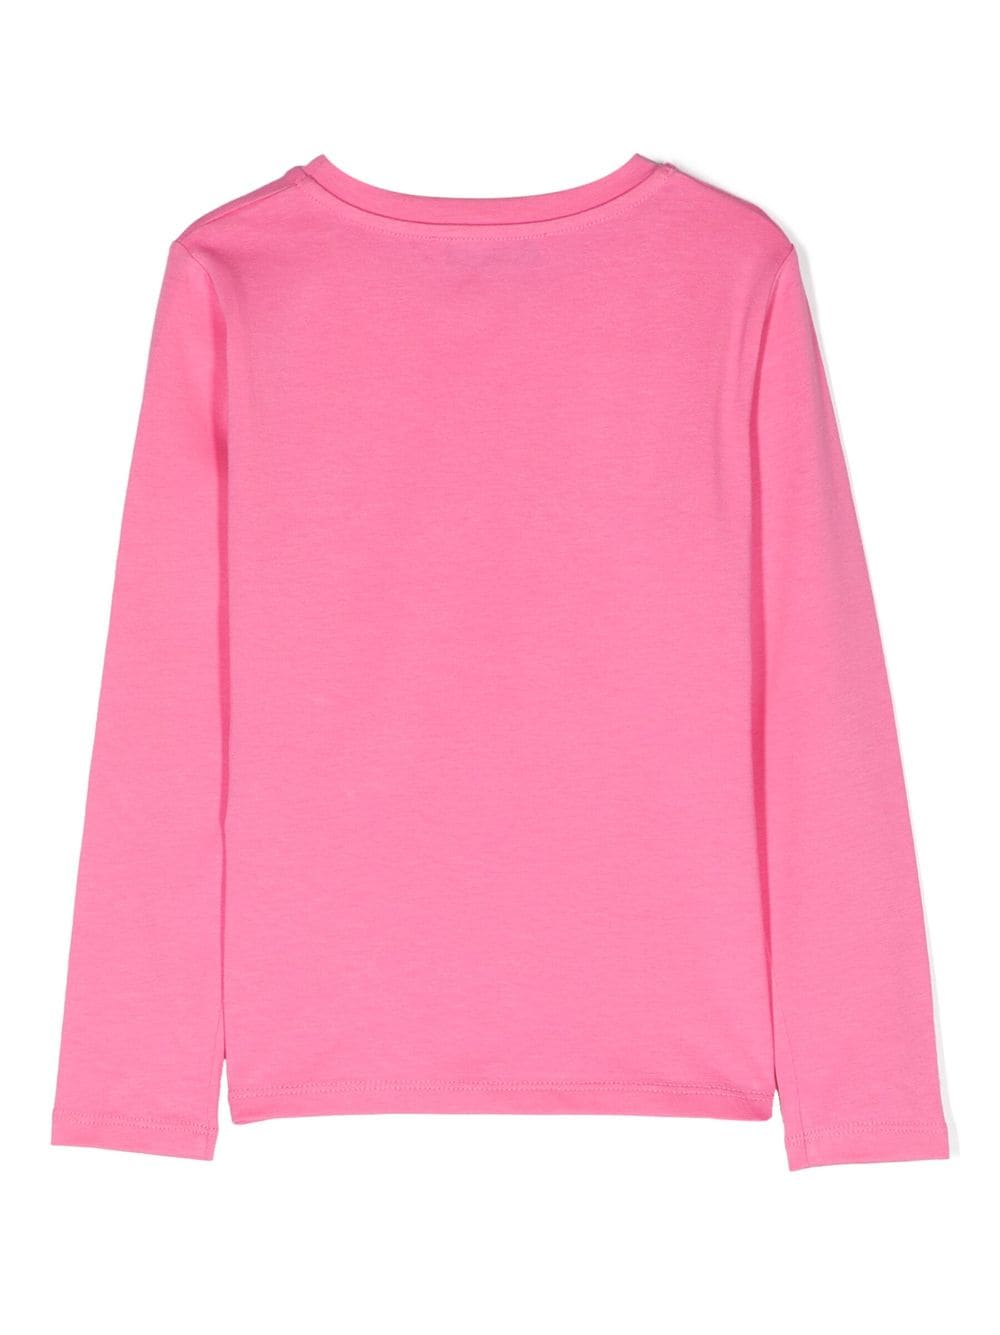 T-shirt fille rose avec imprimé